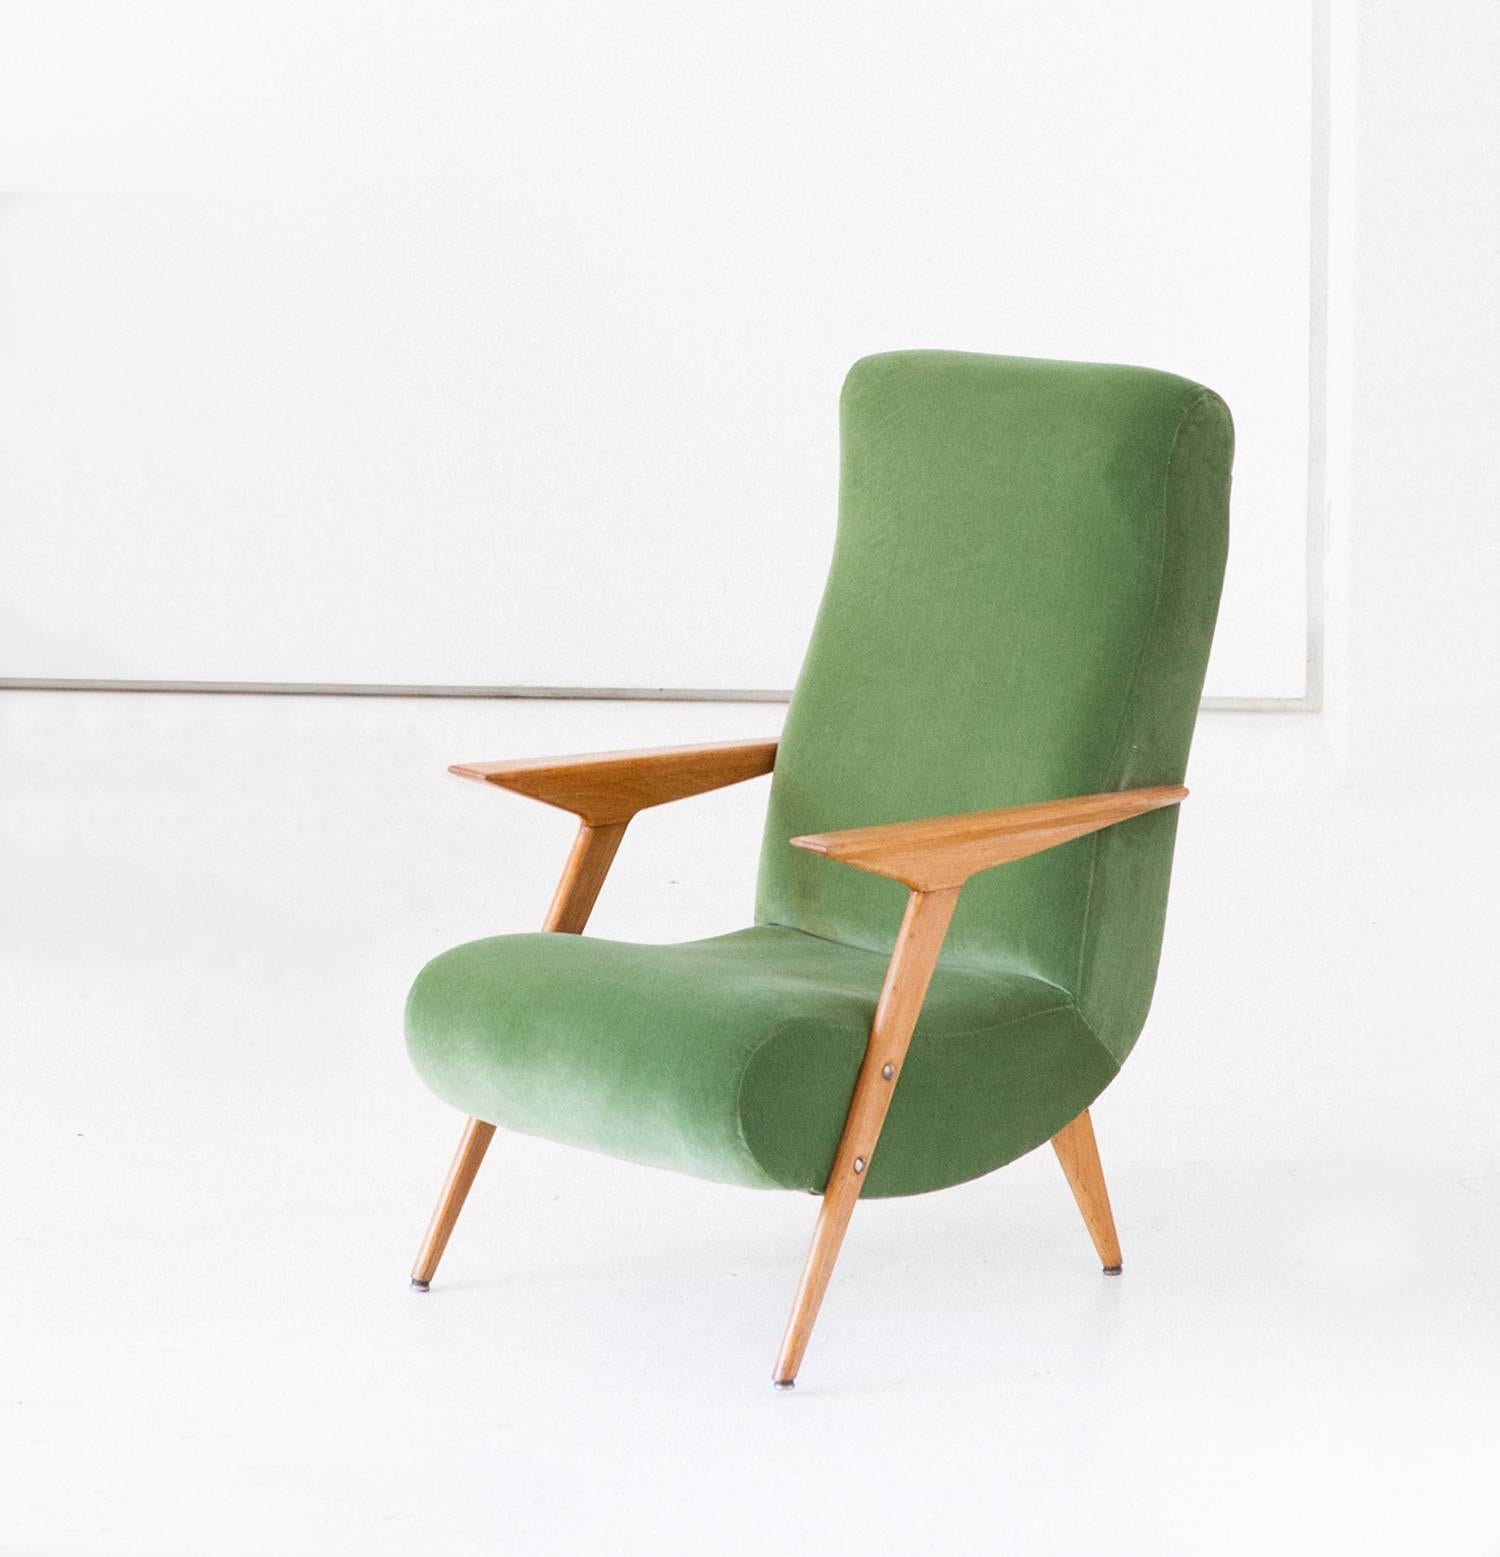 Mid-20th Century Italian Mid-Century Modern Oakwood and New Green Velvet Armchair, 1950s